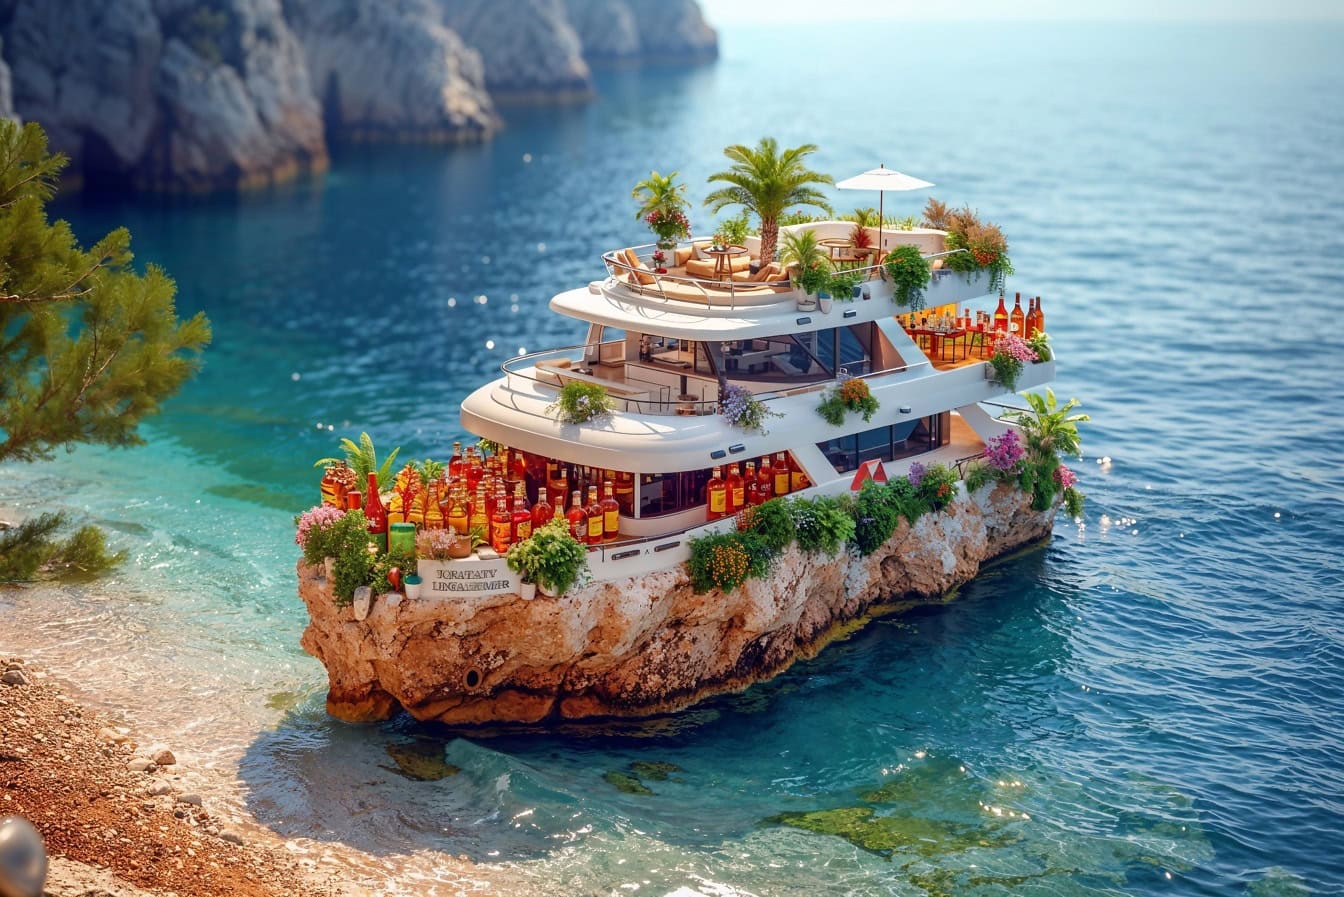 Hình ảnh thú vị về một chiếc du thuyền thu nhỏ với nhiều chai nước uống trên một hòn đảo đá nhỏ